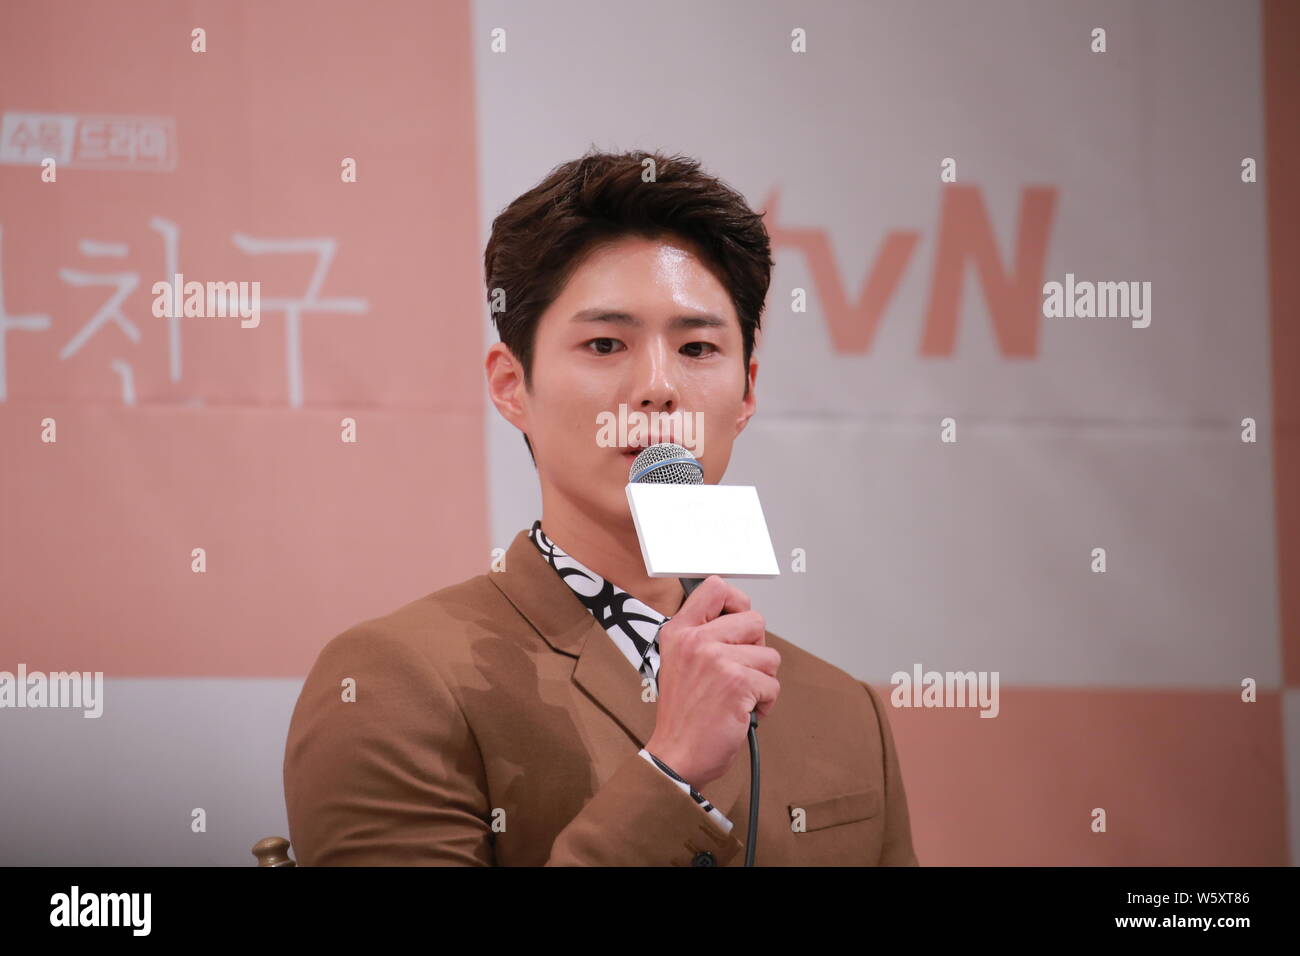 L'acteur sud-coréen Park Bo-gum assiste à une conférence de presse pour la  nouvelle série TV "rencontrer" à Séoul, Corée du Sud, le 21 novembre 2018  Photo Stock - Alamy